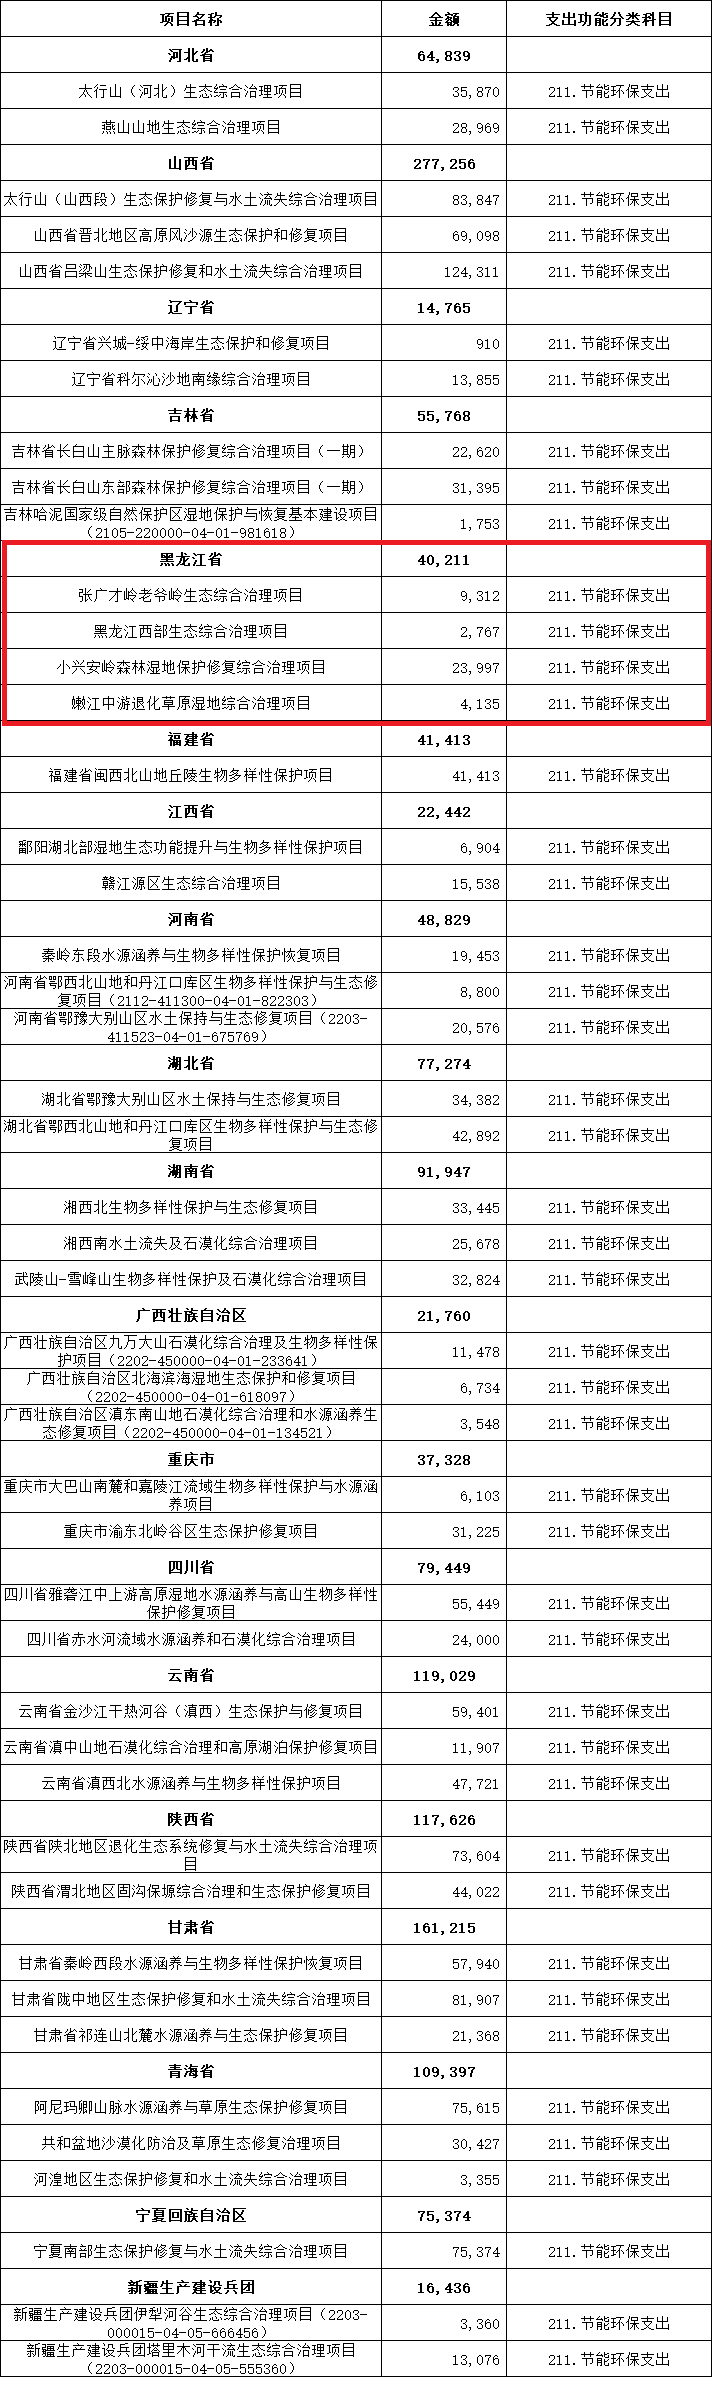 4个项目40211万元！黑龙江生态综合治理获中央财政支持